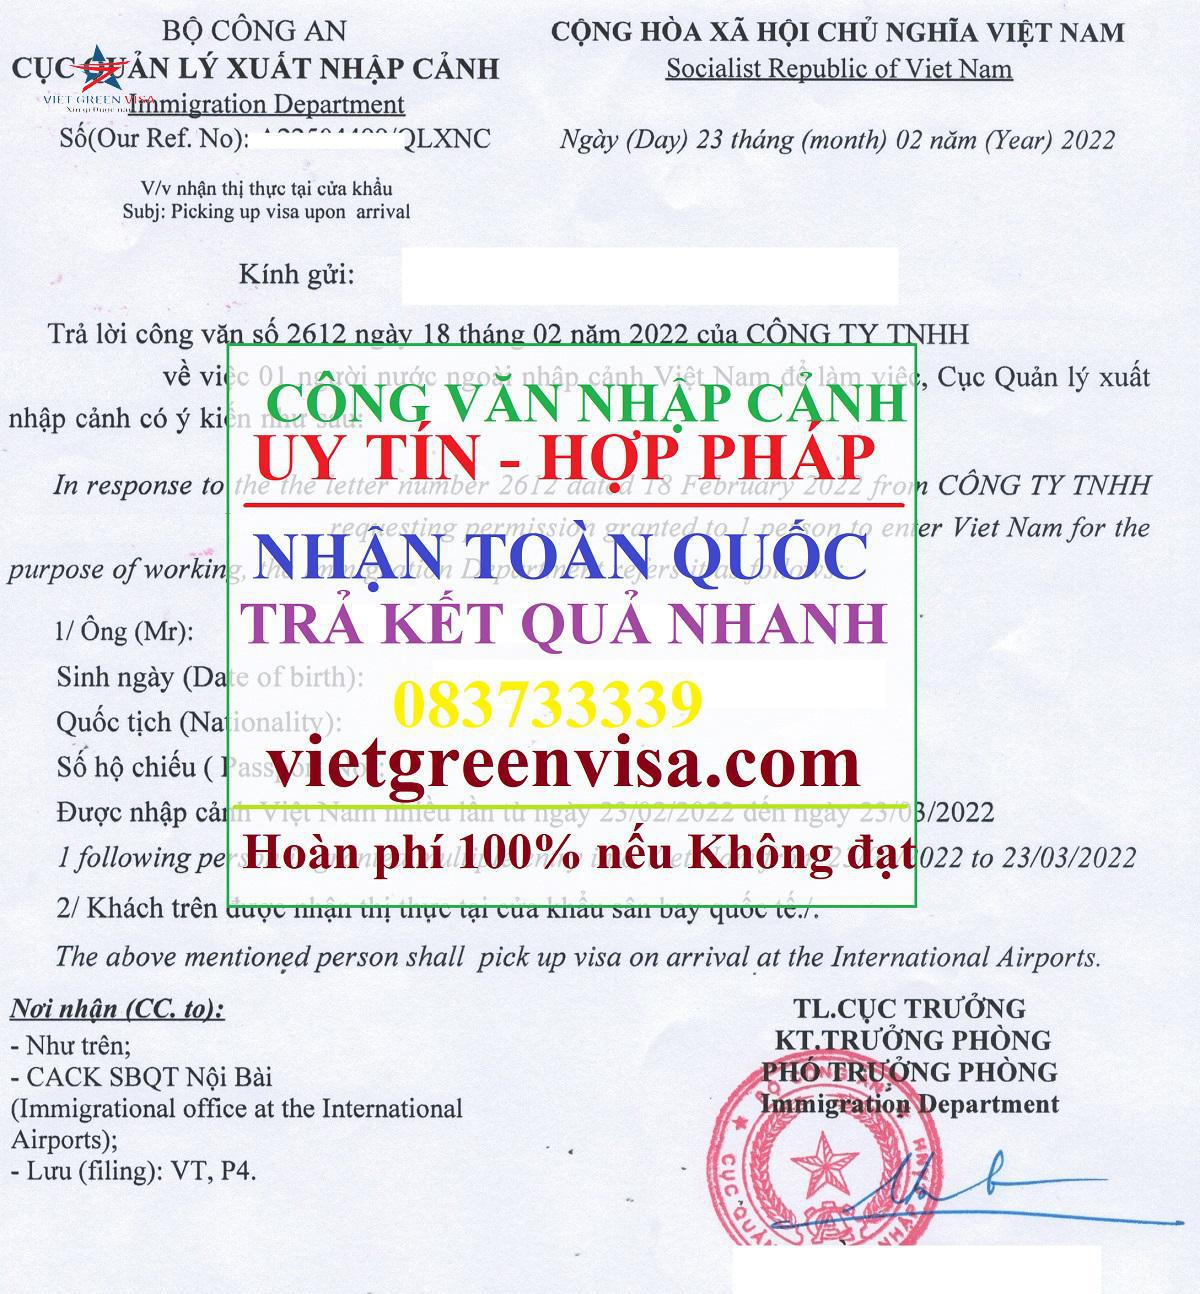 Công văn nhập cảnh Việt Nam cho người Lào, Xin công văn nhập cảnh Việt Nam cho quốc tịch Lào, Công văn nhập cảnh cho người Lào, Dịch vụ công văn nhập cảnh cho người Lào